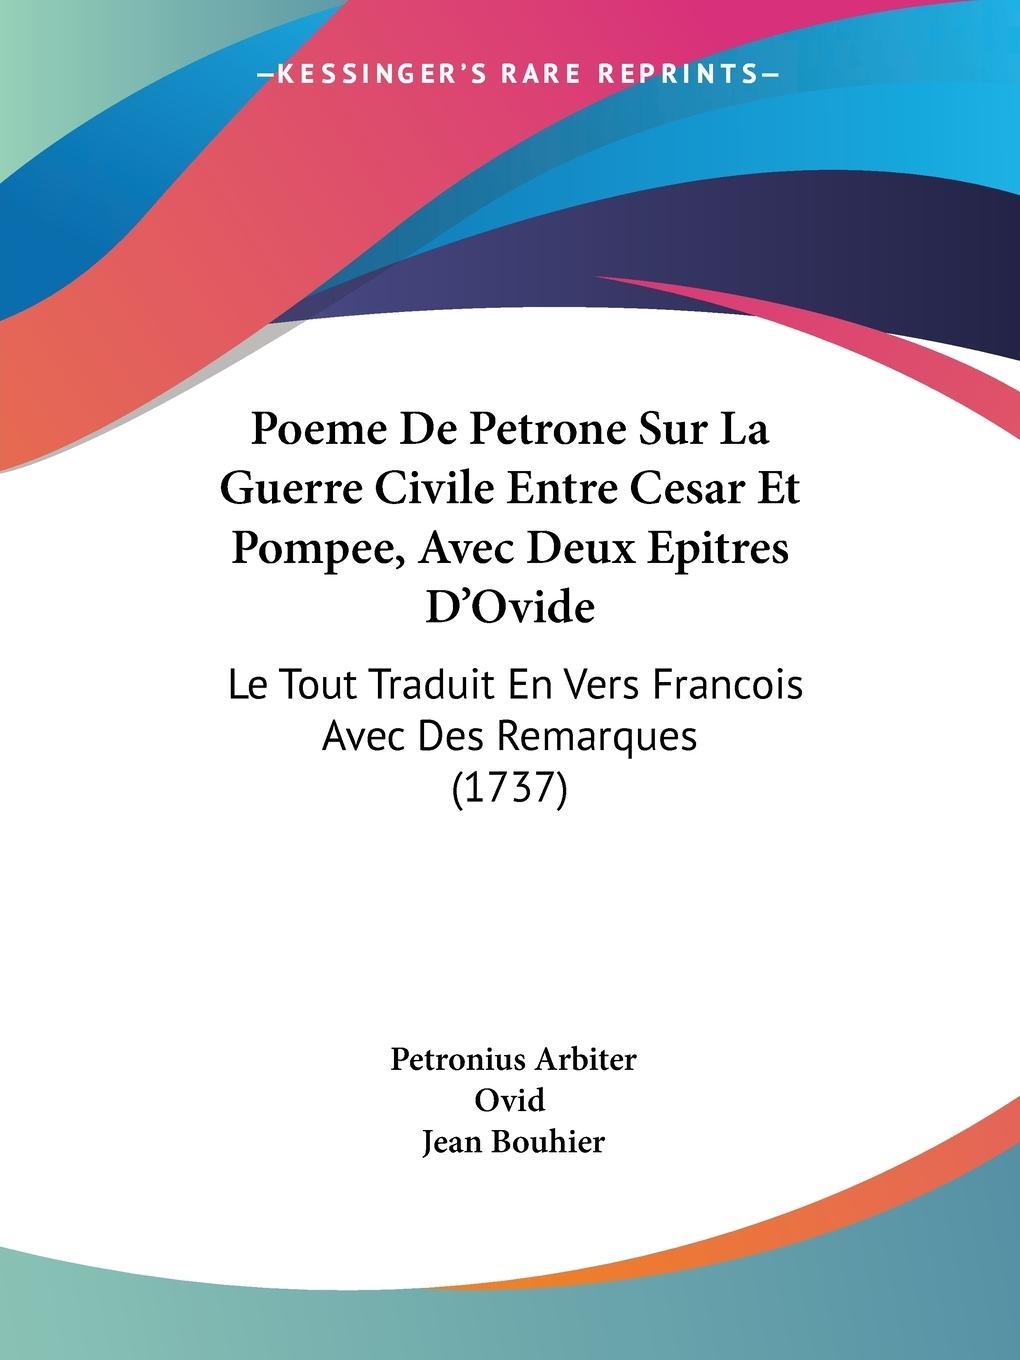 Poeme De Petrone Sur La Guerre Civile Entre Cesar Et Pompee, Avec Deux Epitres D Ovide - Arbiter, Petronius Ovid Bouhier, Jean